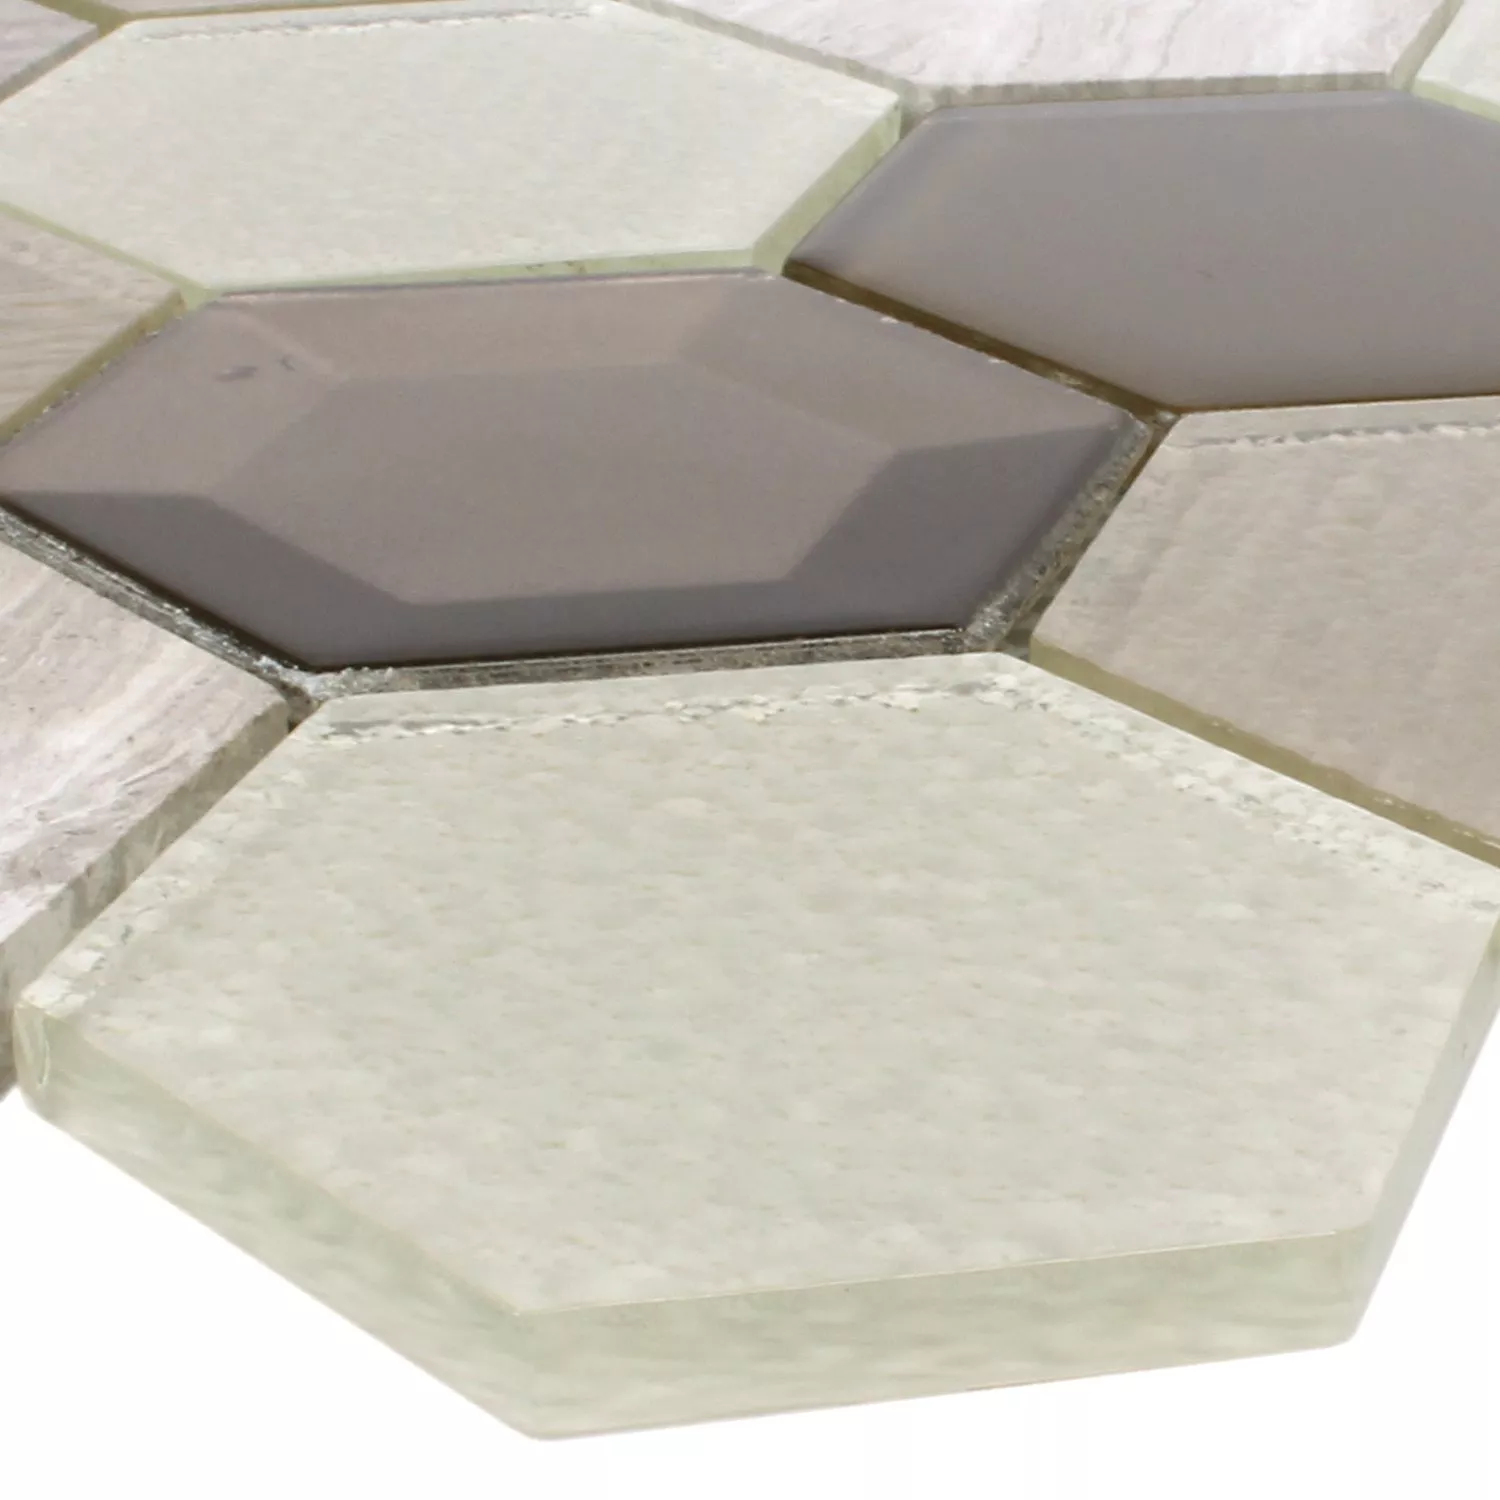 Campione Mosaico Concrete Vetro Pietra Naturale 3D Beige